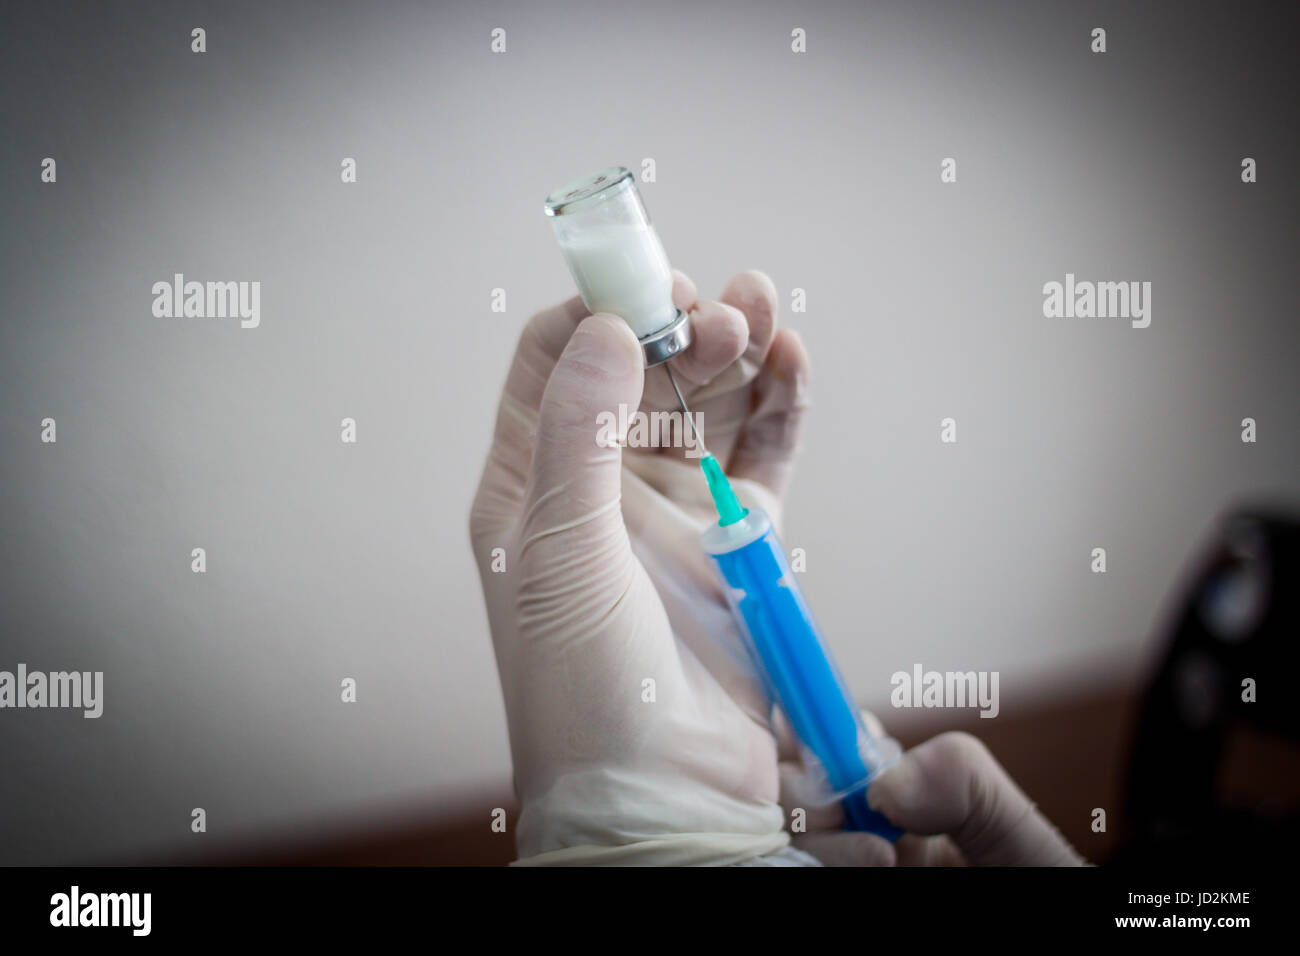 Junger Arzt bereitet eine Injektion zu einem Patienten, der injizierten Flüssigkeit in die Nadel halten sehr sorgfältig Stockfoto